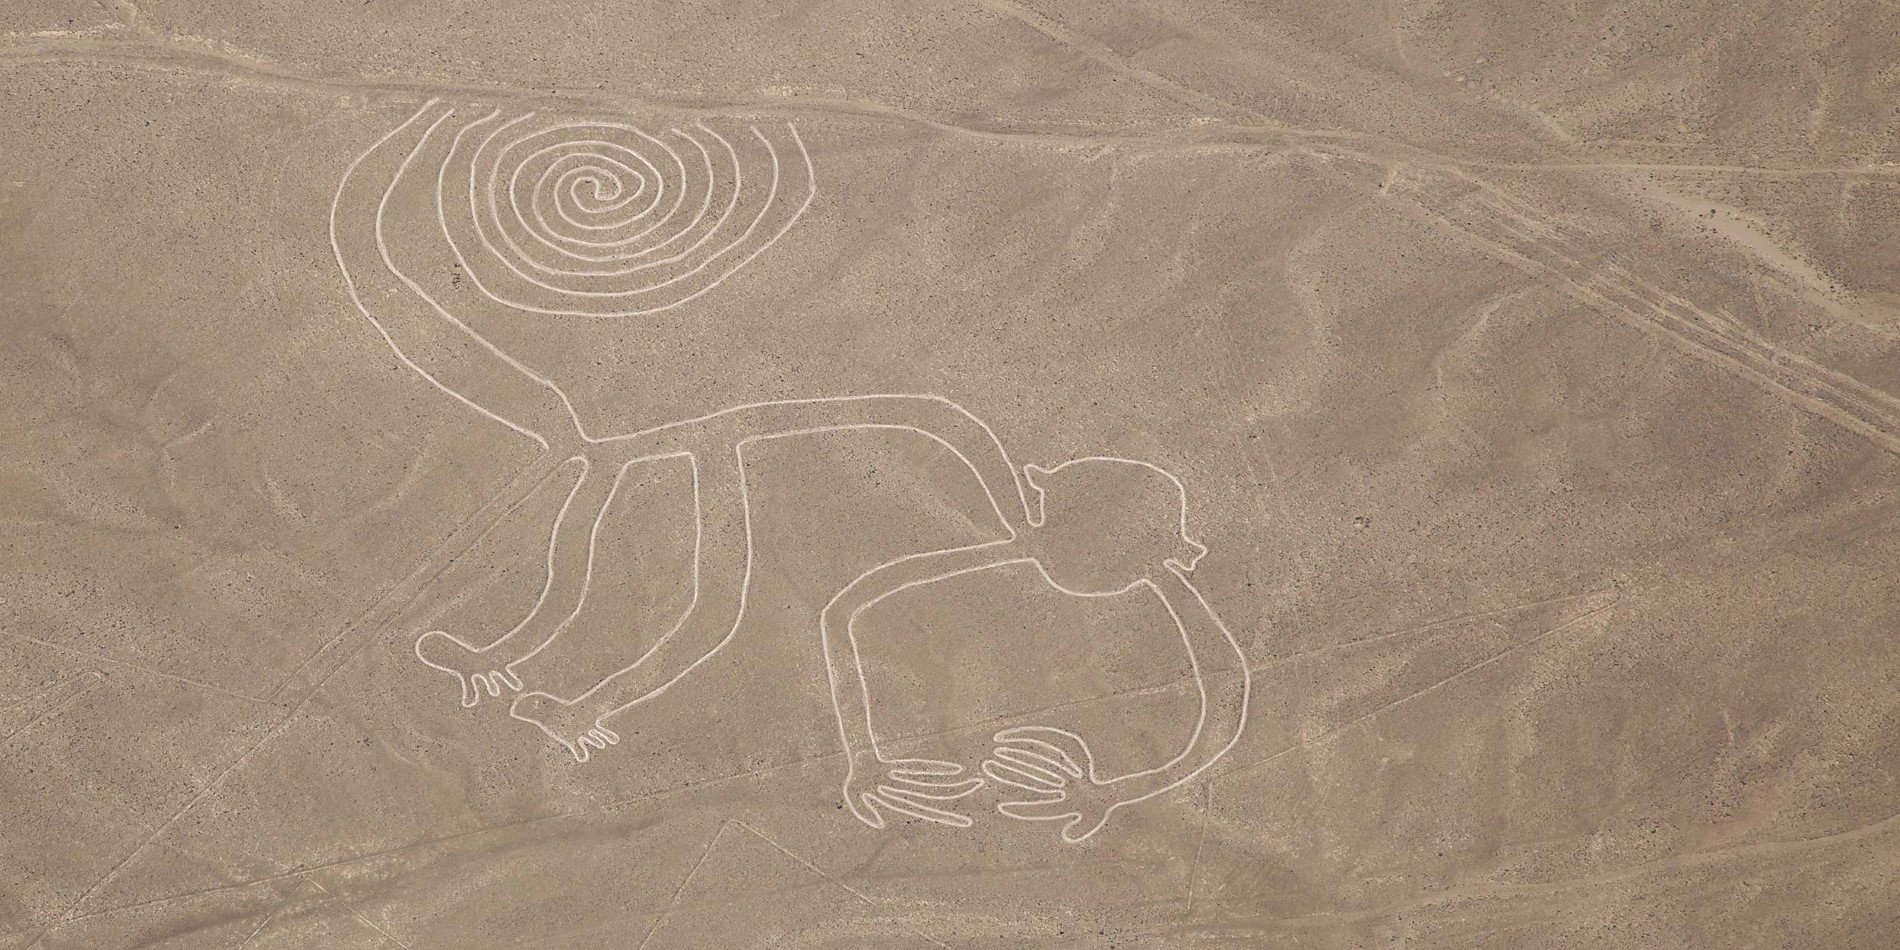 Affen-Geoglyphe, Nazca-Linien, Peru